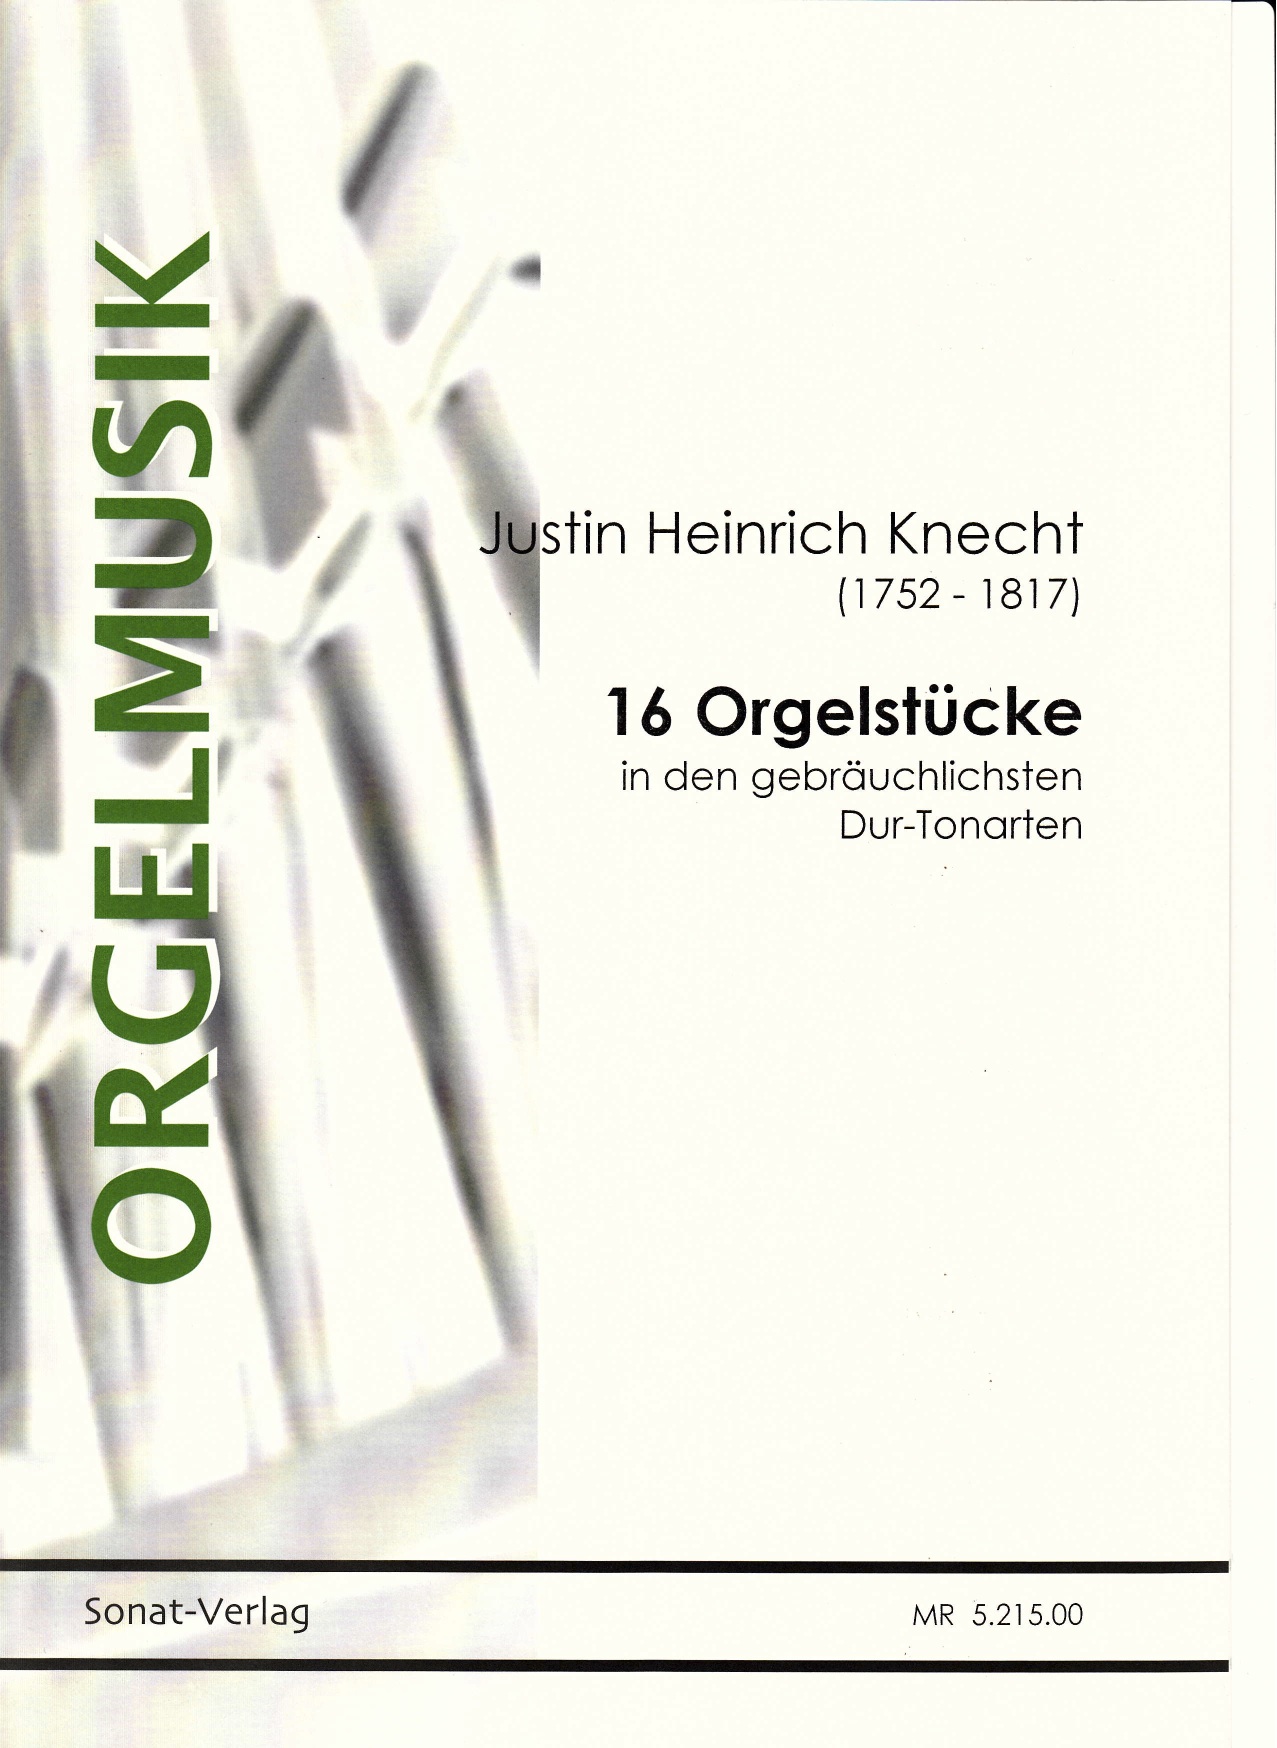 Knecht, J. H.: Orgelstücke in den gebräuchlichsten Dur-Tonarten